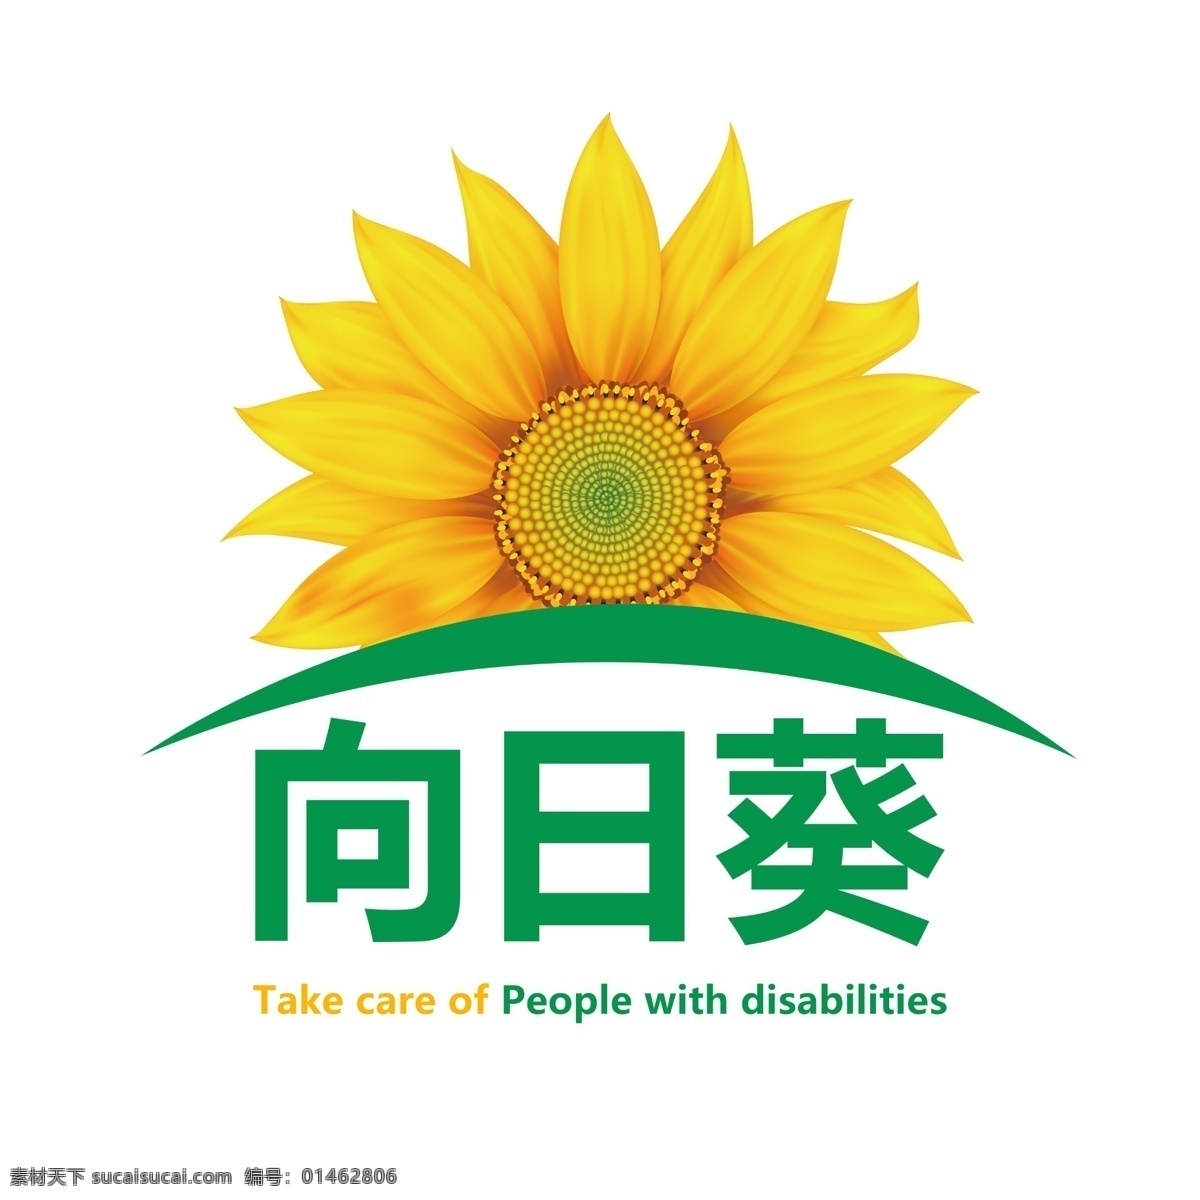 向日葵 关爱残疾人 logo 相亲相爱 公益活动项目 标志图标 公共标识标志